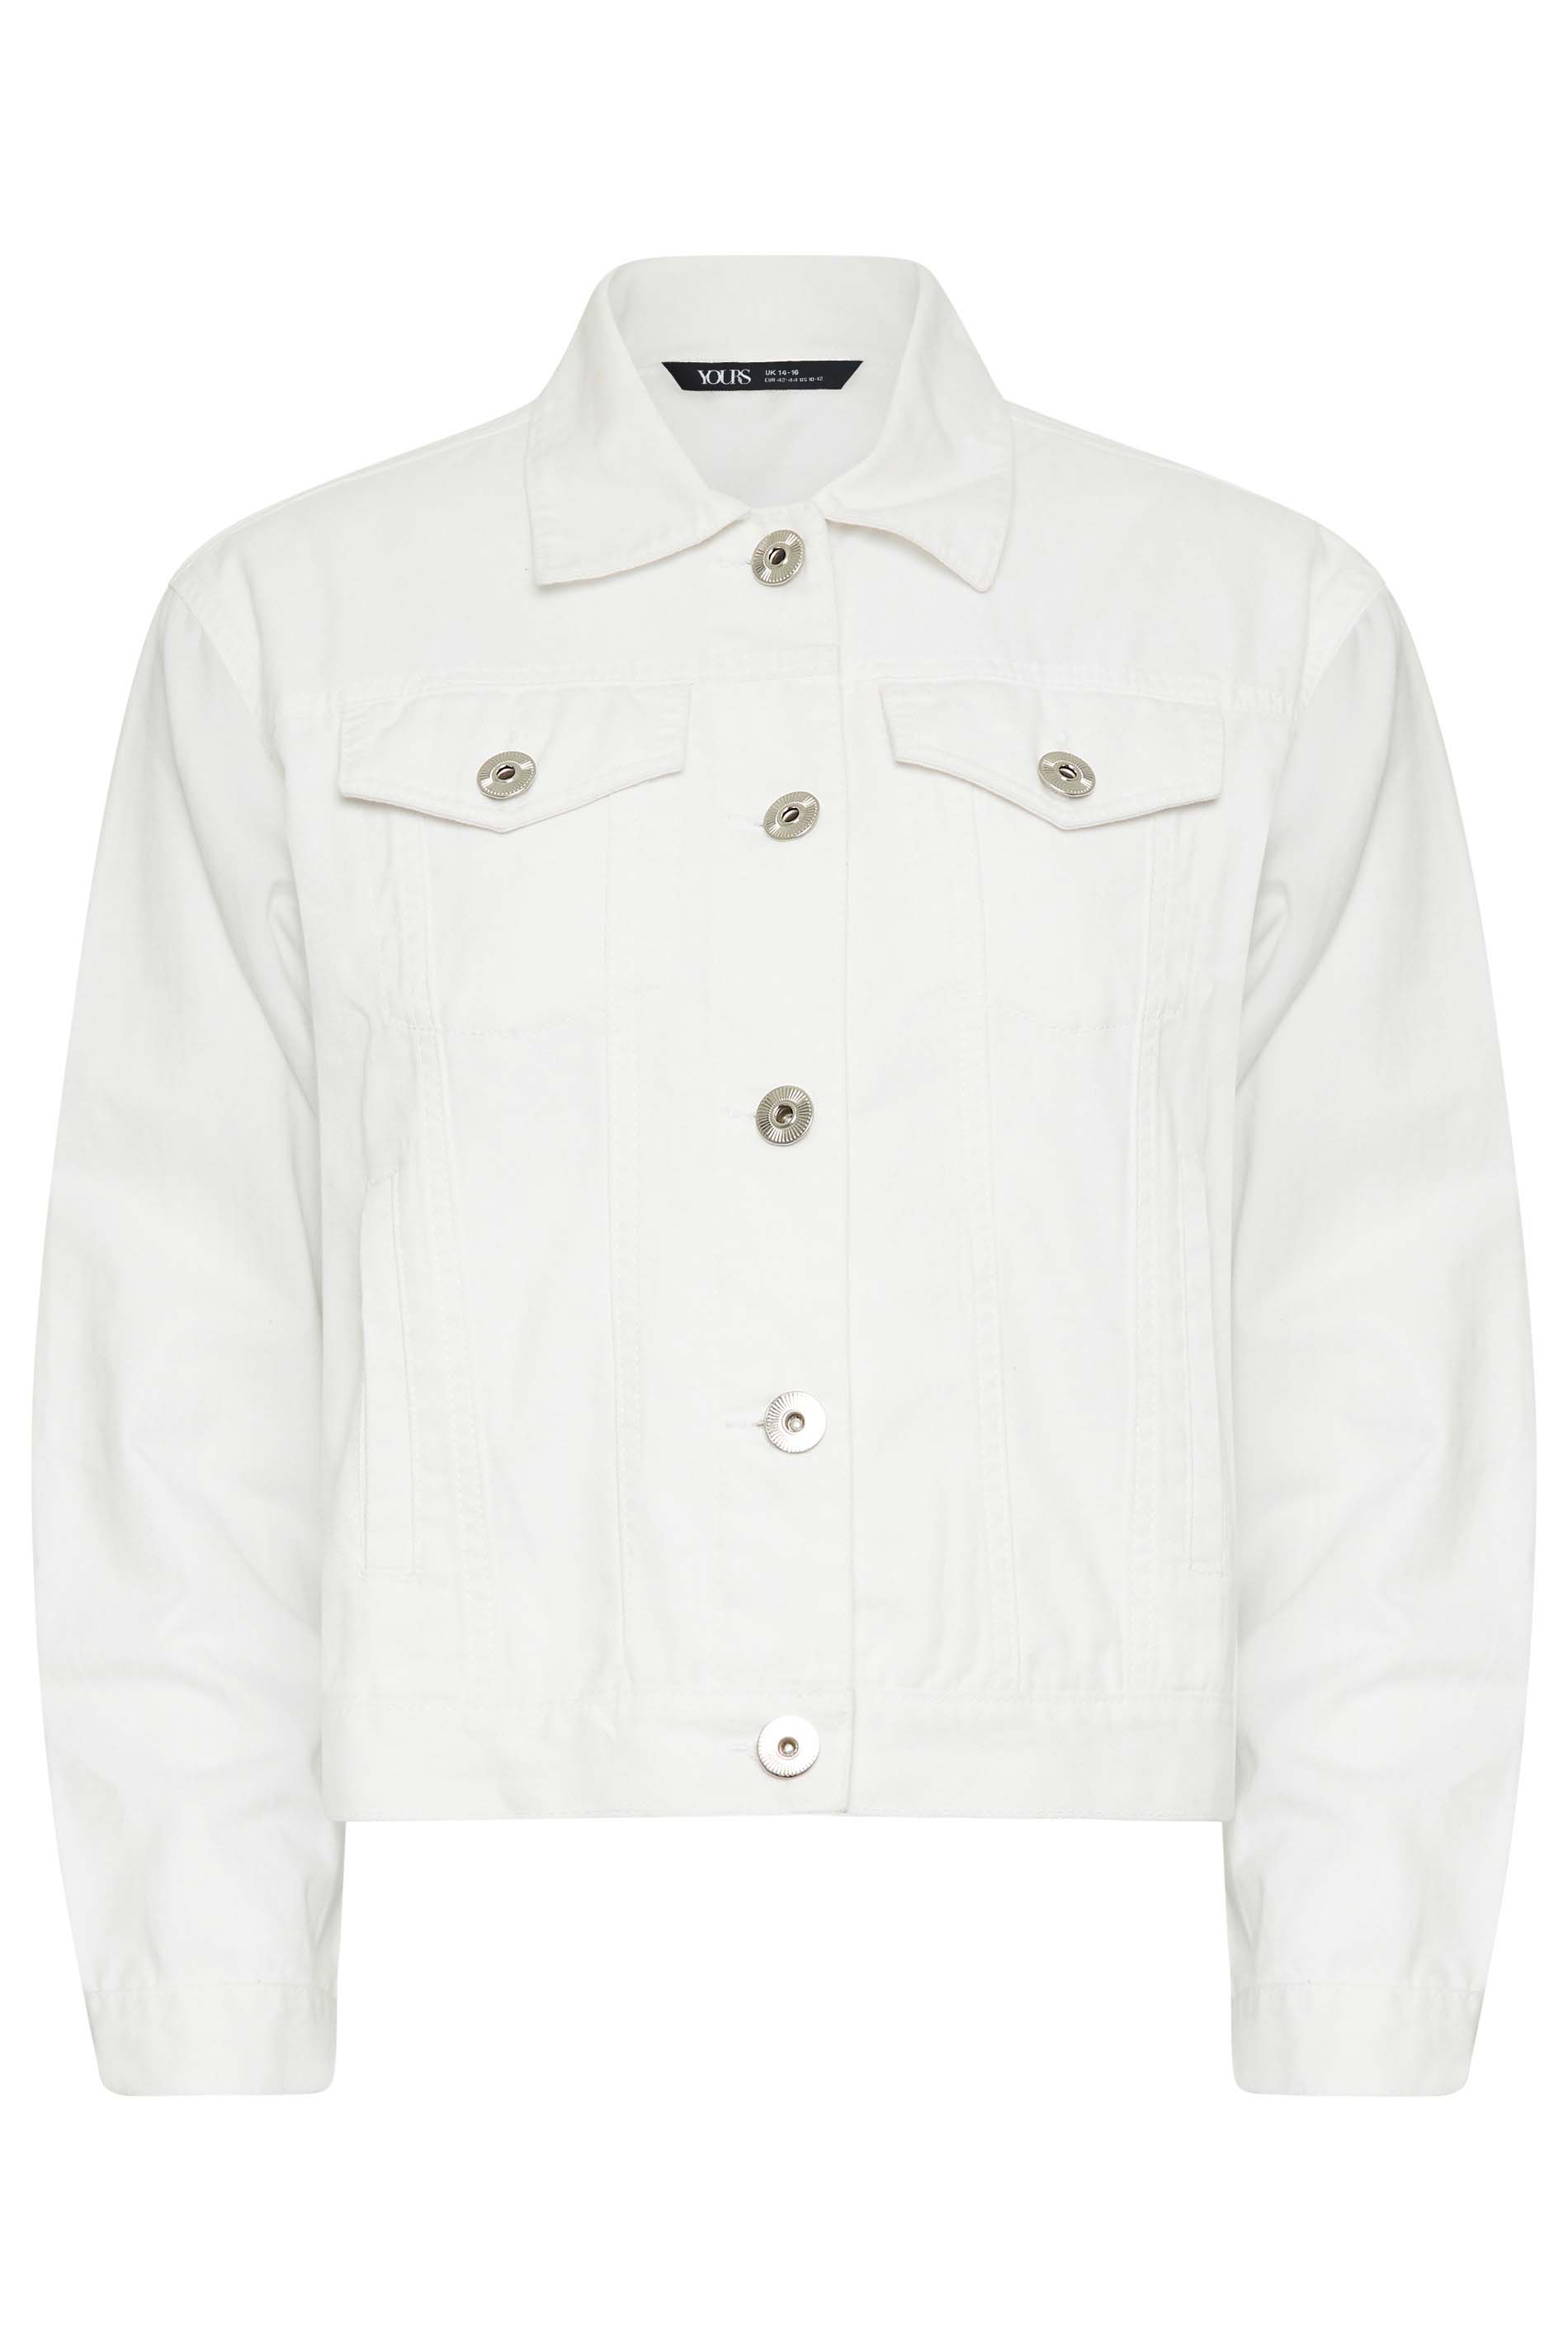 Yours Petite Curve White Denim Jacket, Women's Curve & Plus Size, Yours